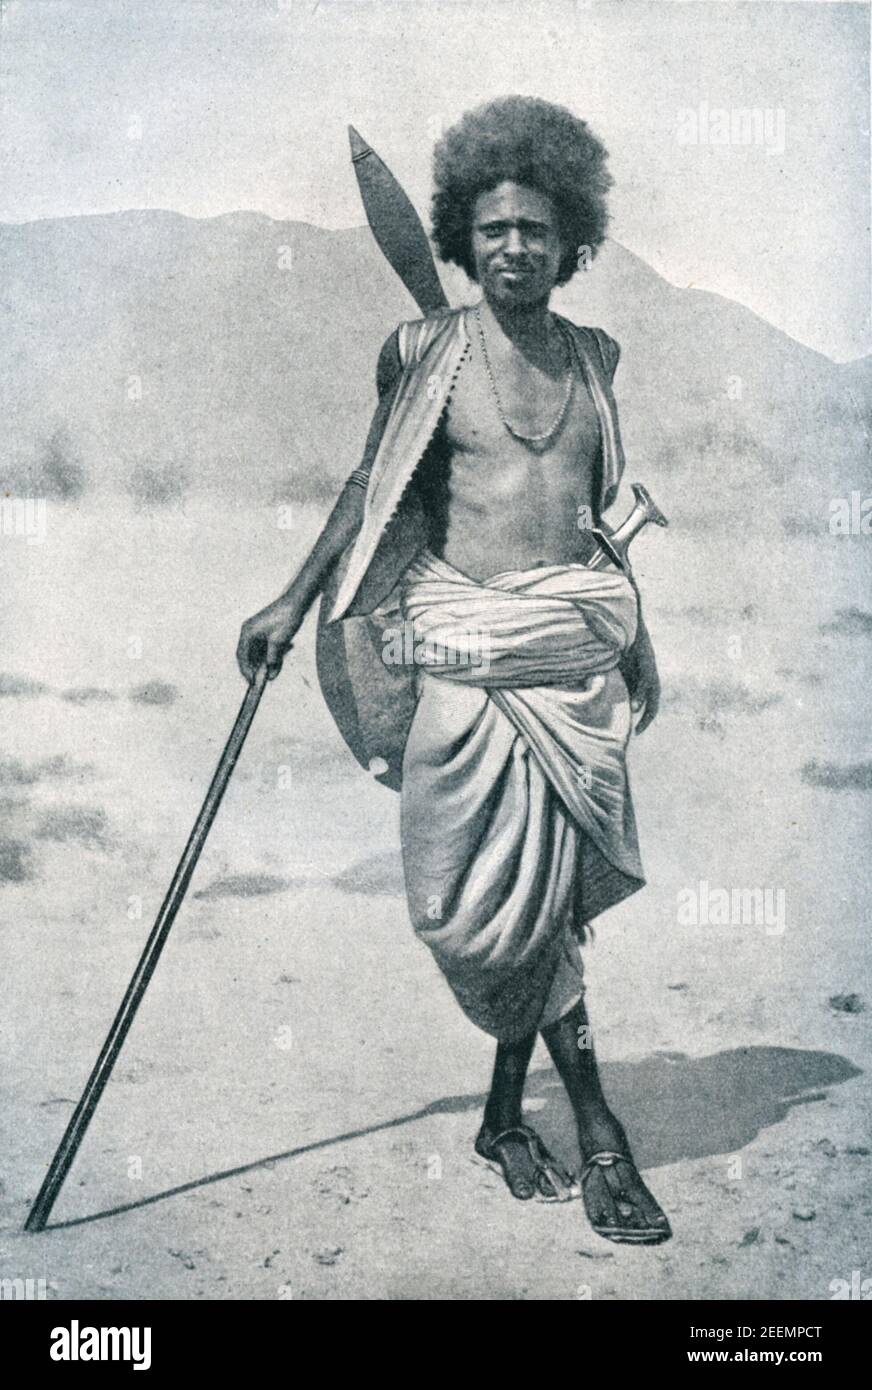 Inizio XX secolo foto di membro della tribù nomade di Hadendea Beja del Sudan orientale armato di lancia, spada e scudo. Il loro stile di capelli (Tiffa) li ha guadagnato il nome nick Fuzzy Wuzzy tra le truppe britanniche durante la guerra Mahdist del 1880-1890 Foto Stock